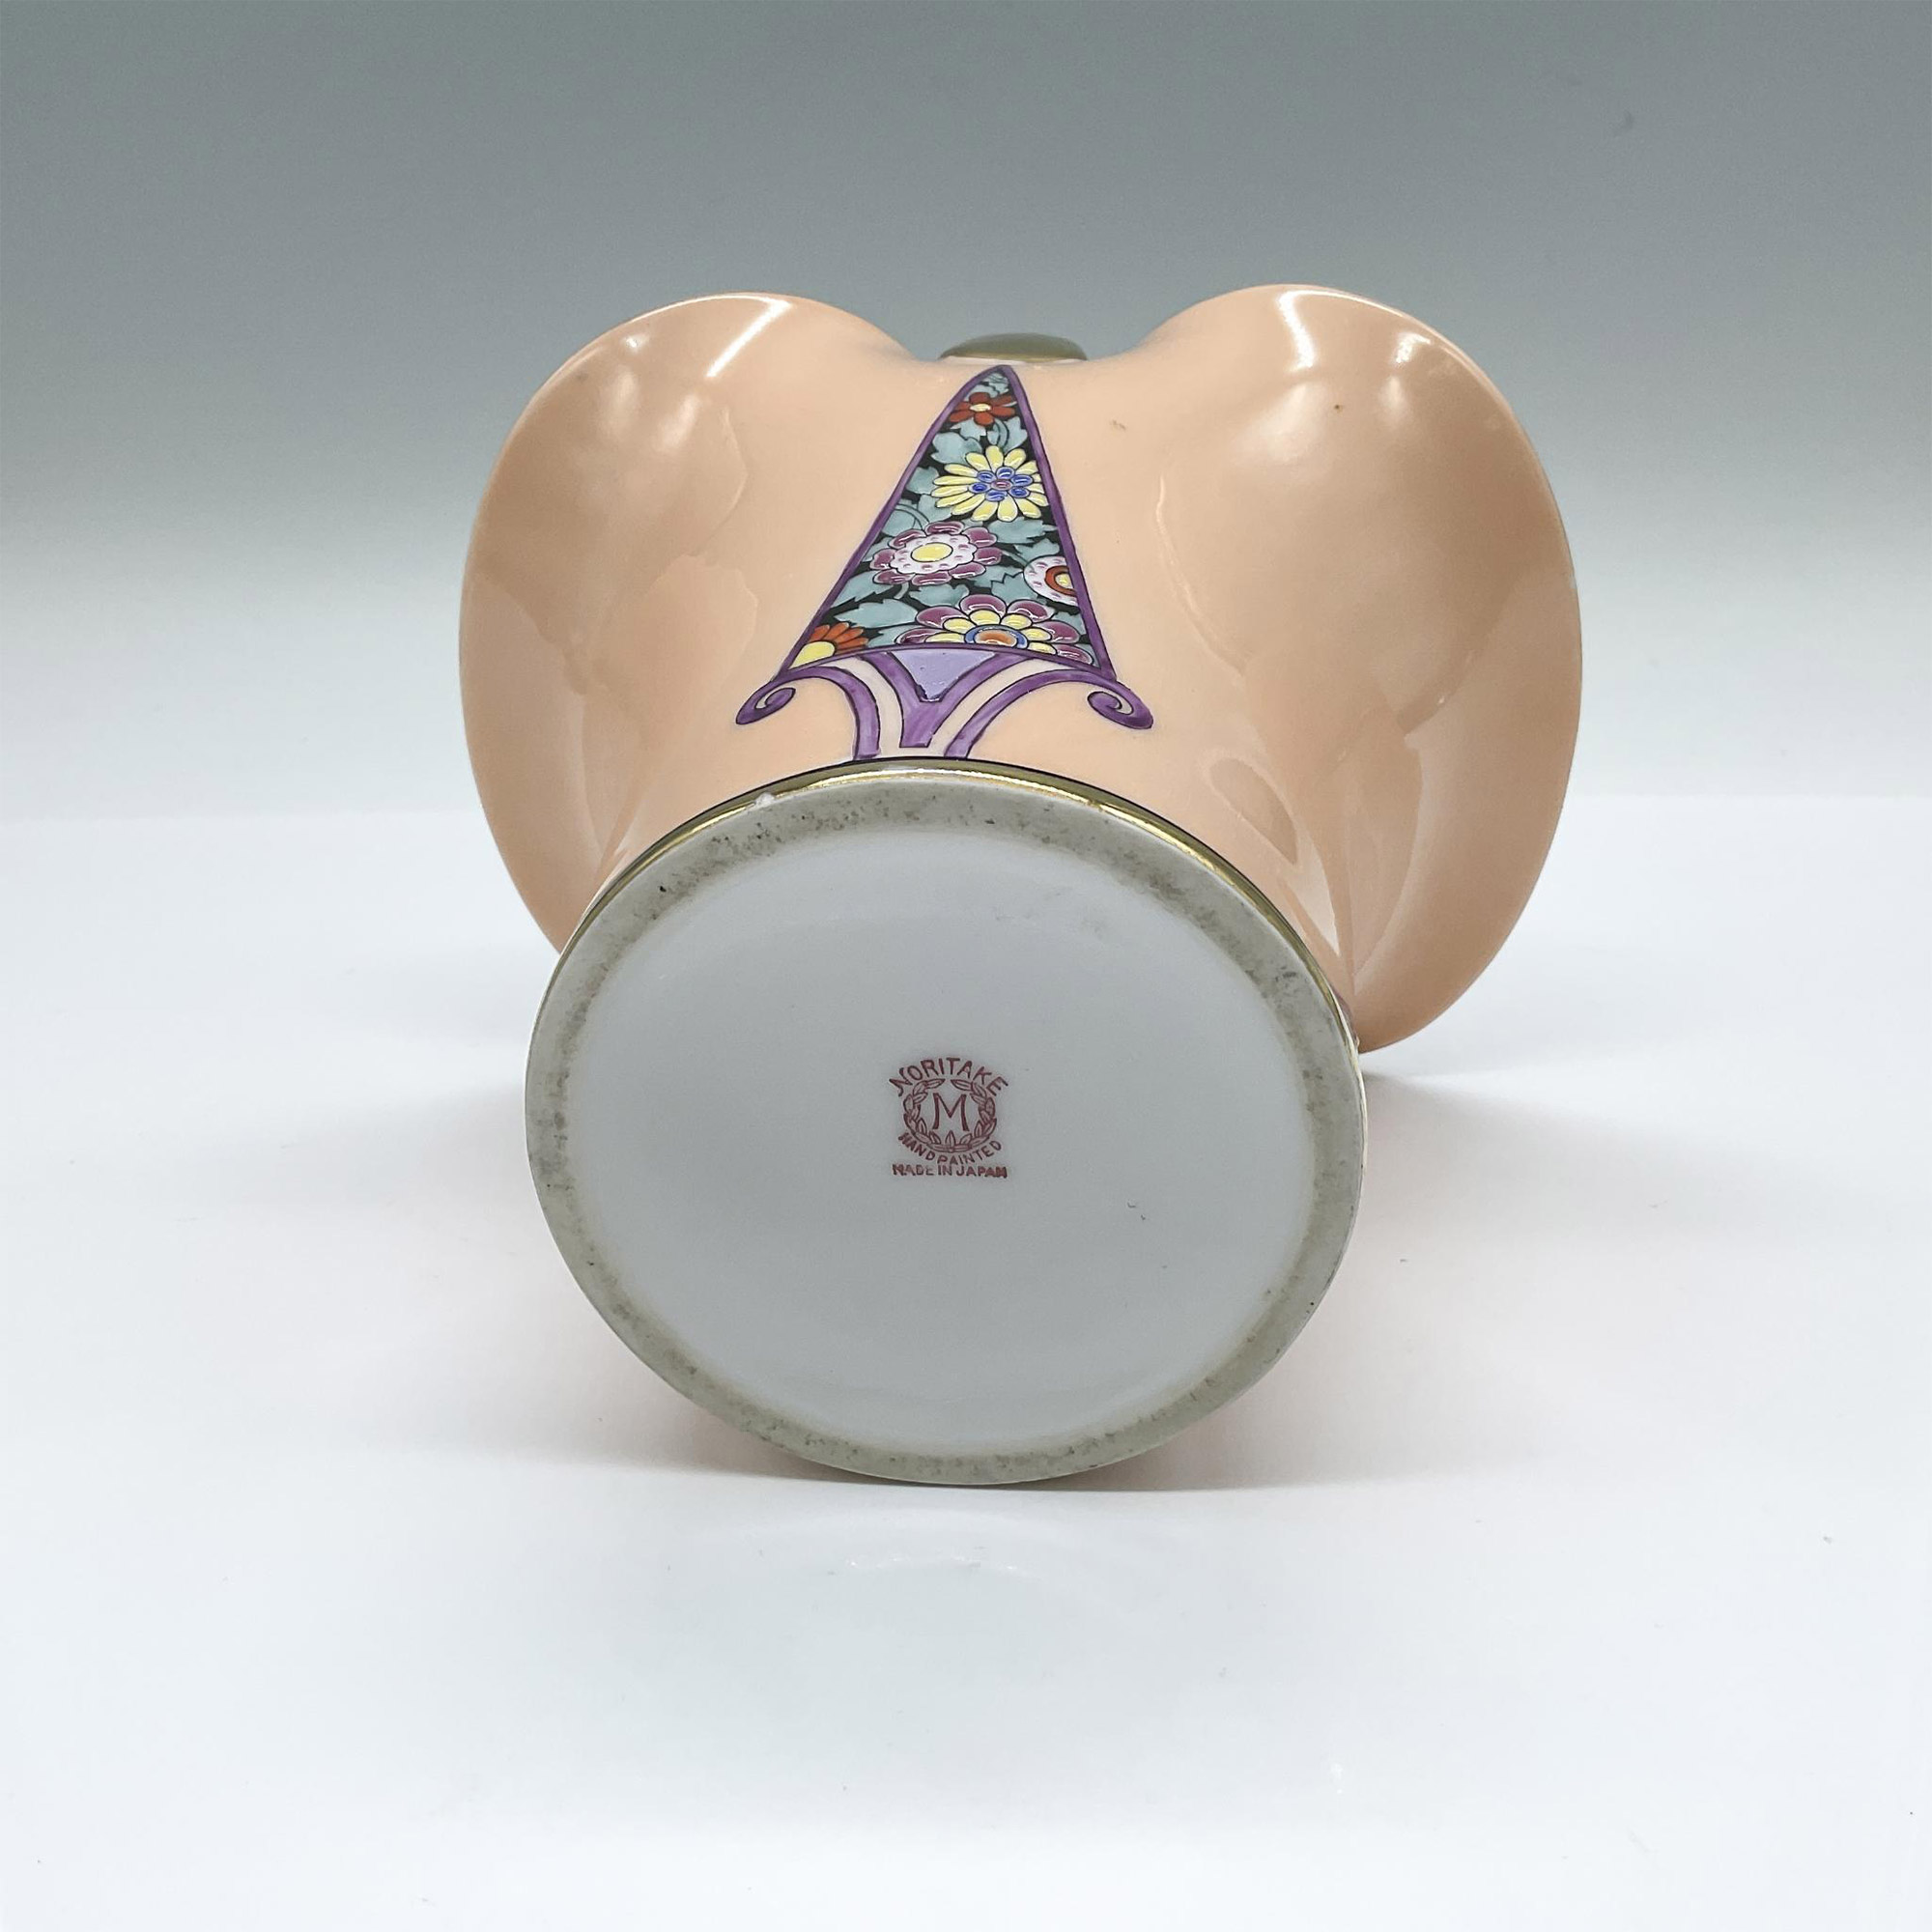 Morimura Bros. Noritake Porcelain Basket Vase - Image 3 of 3